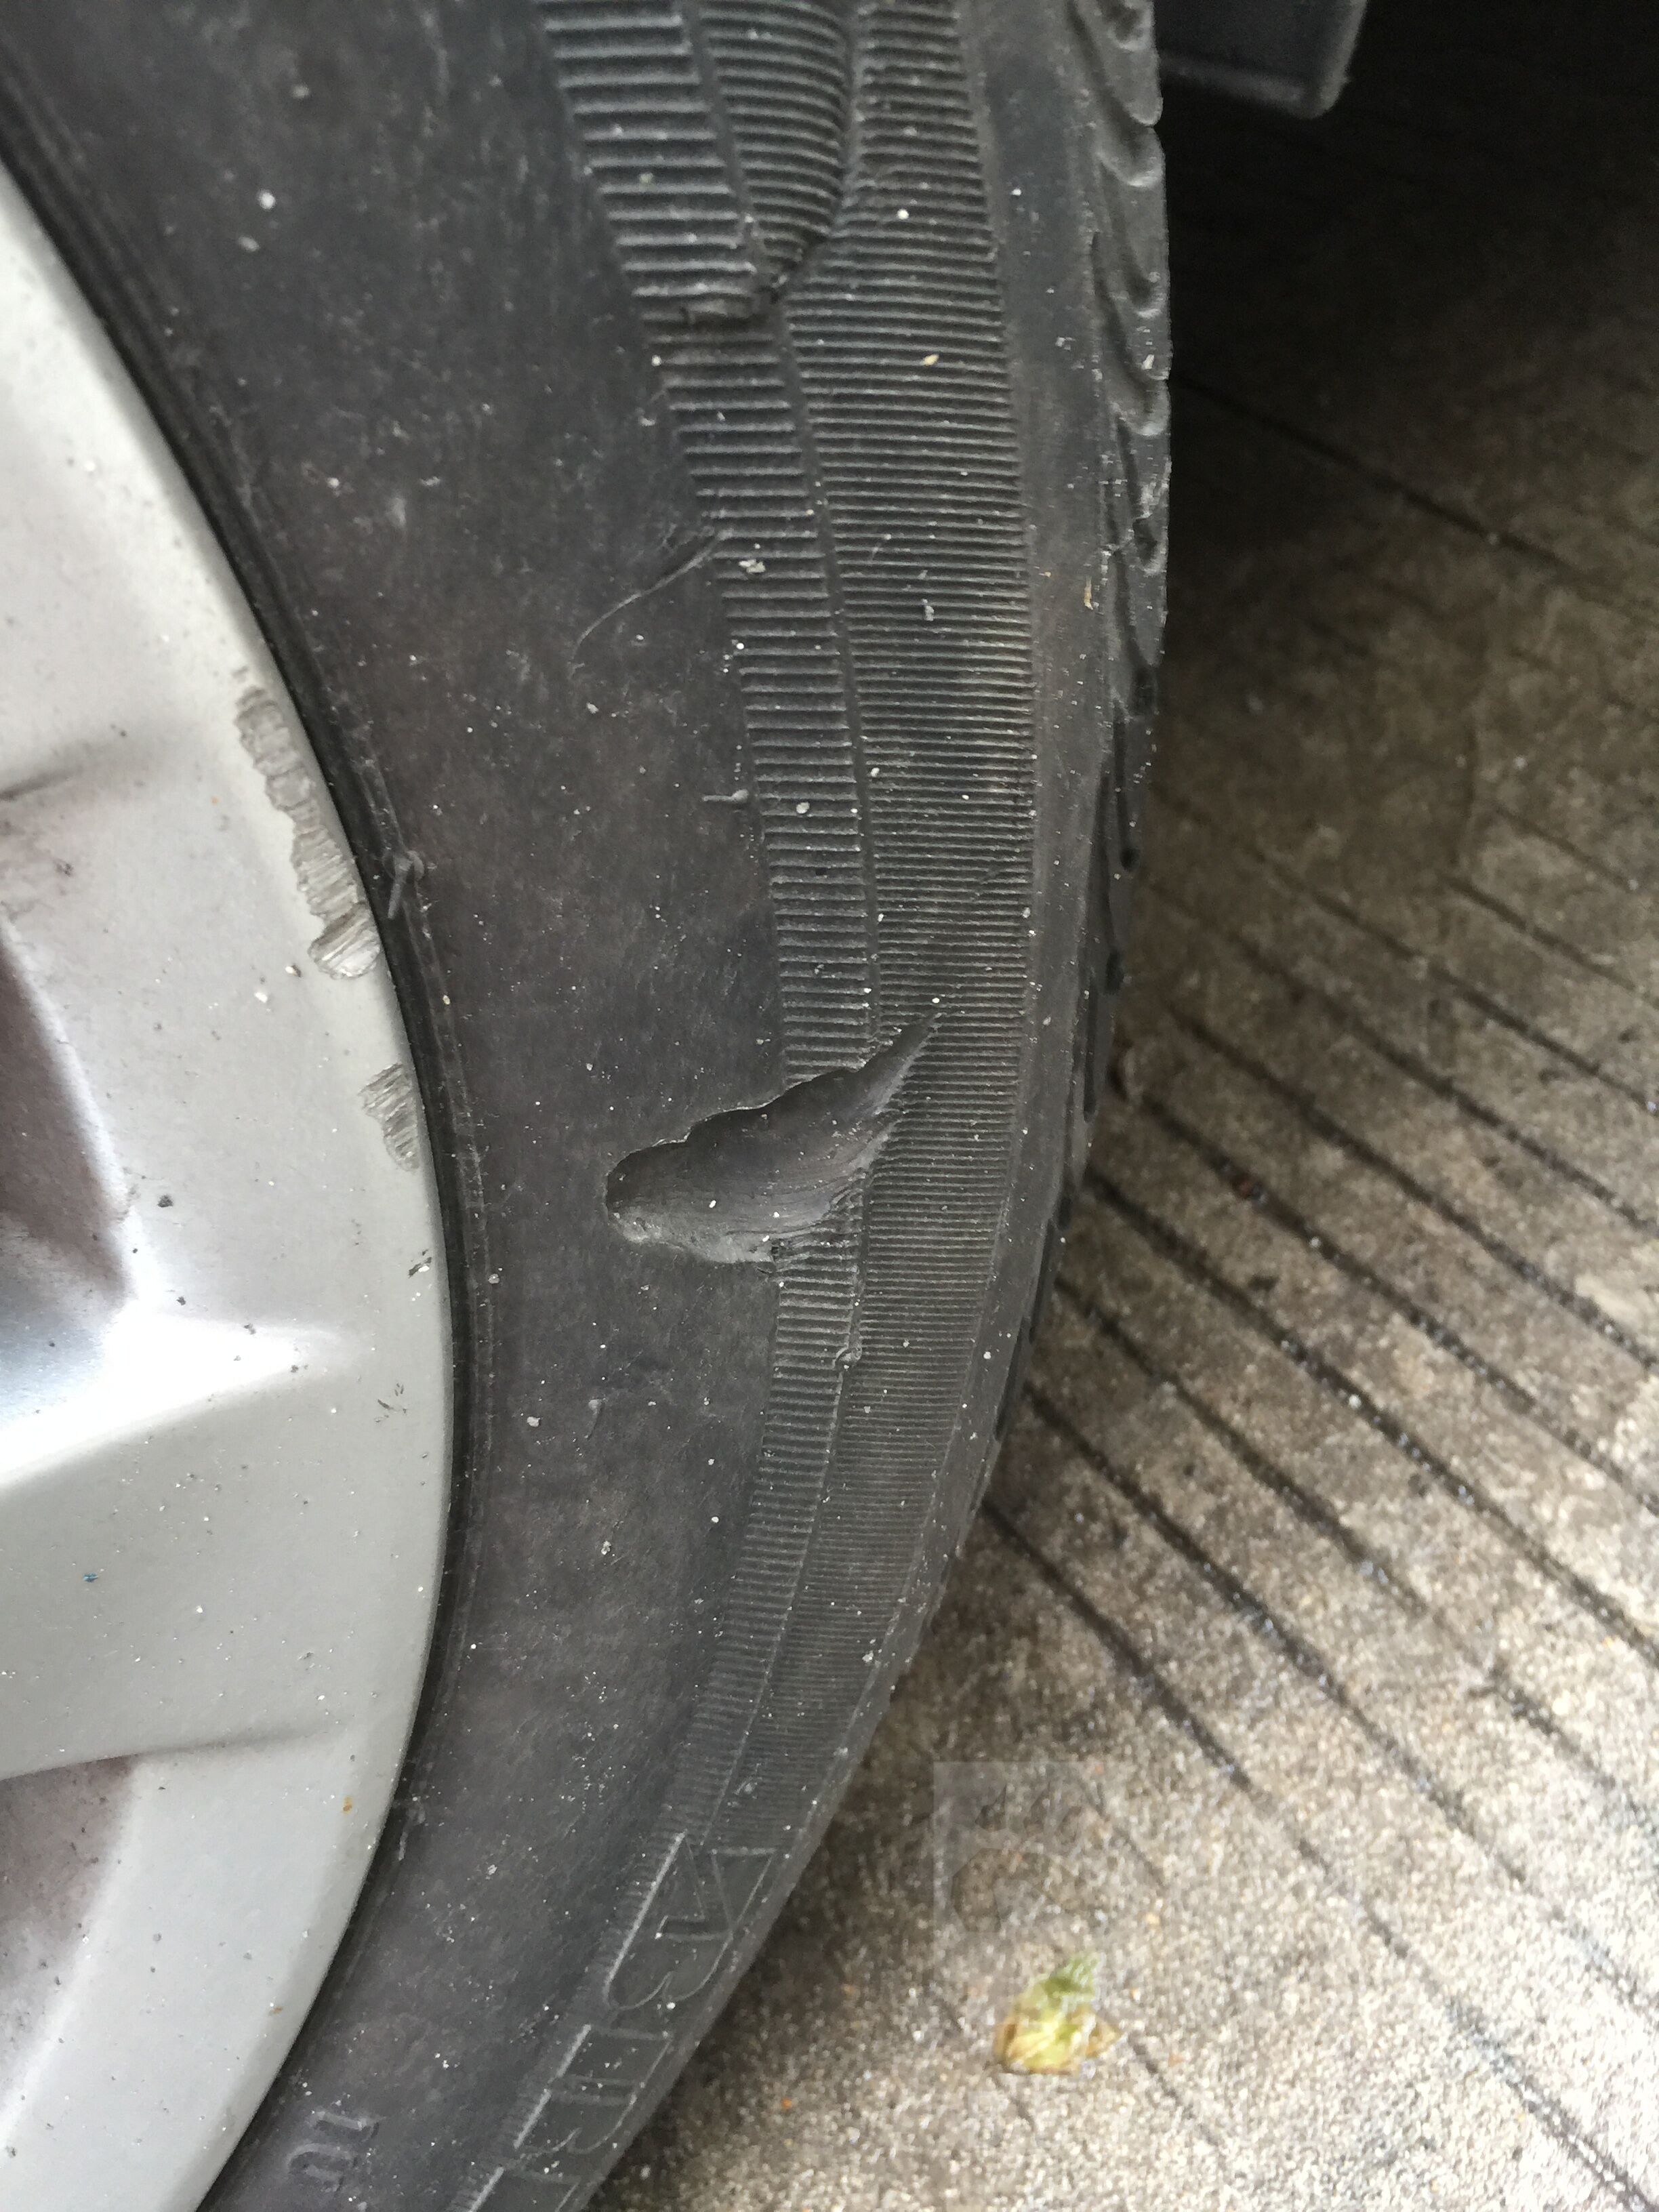 [问题求解] 轮胎侧面刮出一个坑,没露线,放后轮市区使用问题大吗